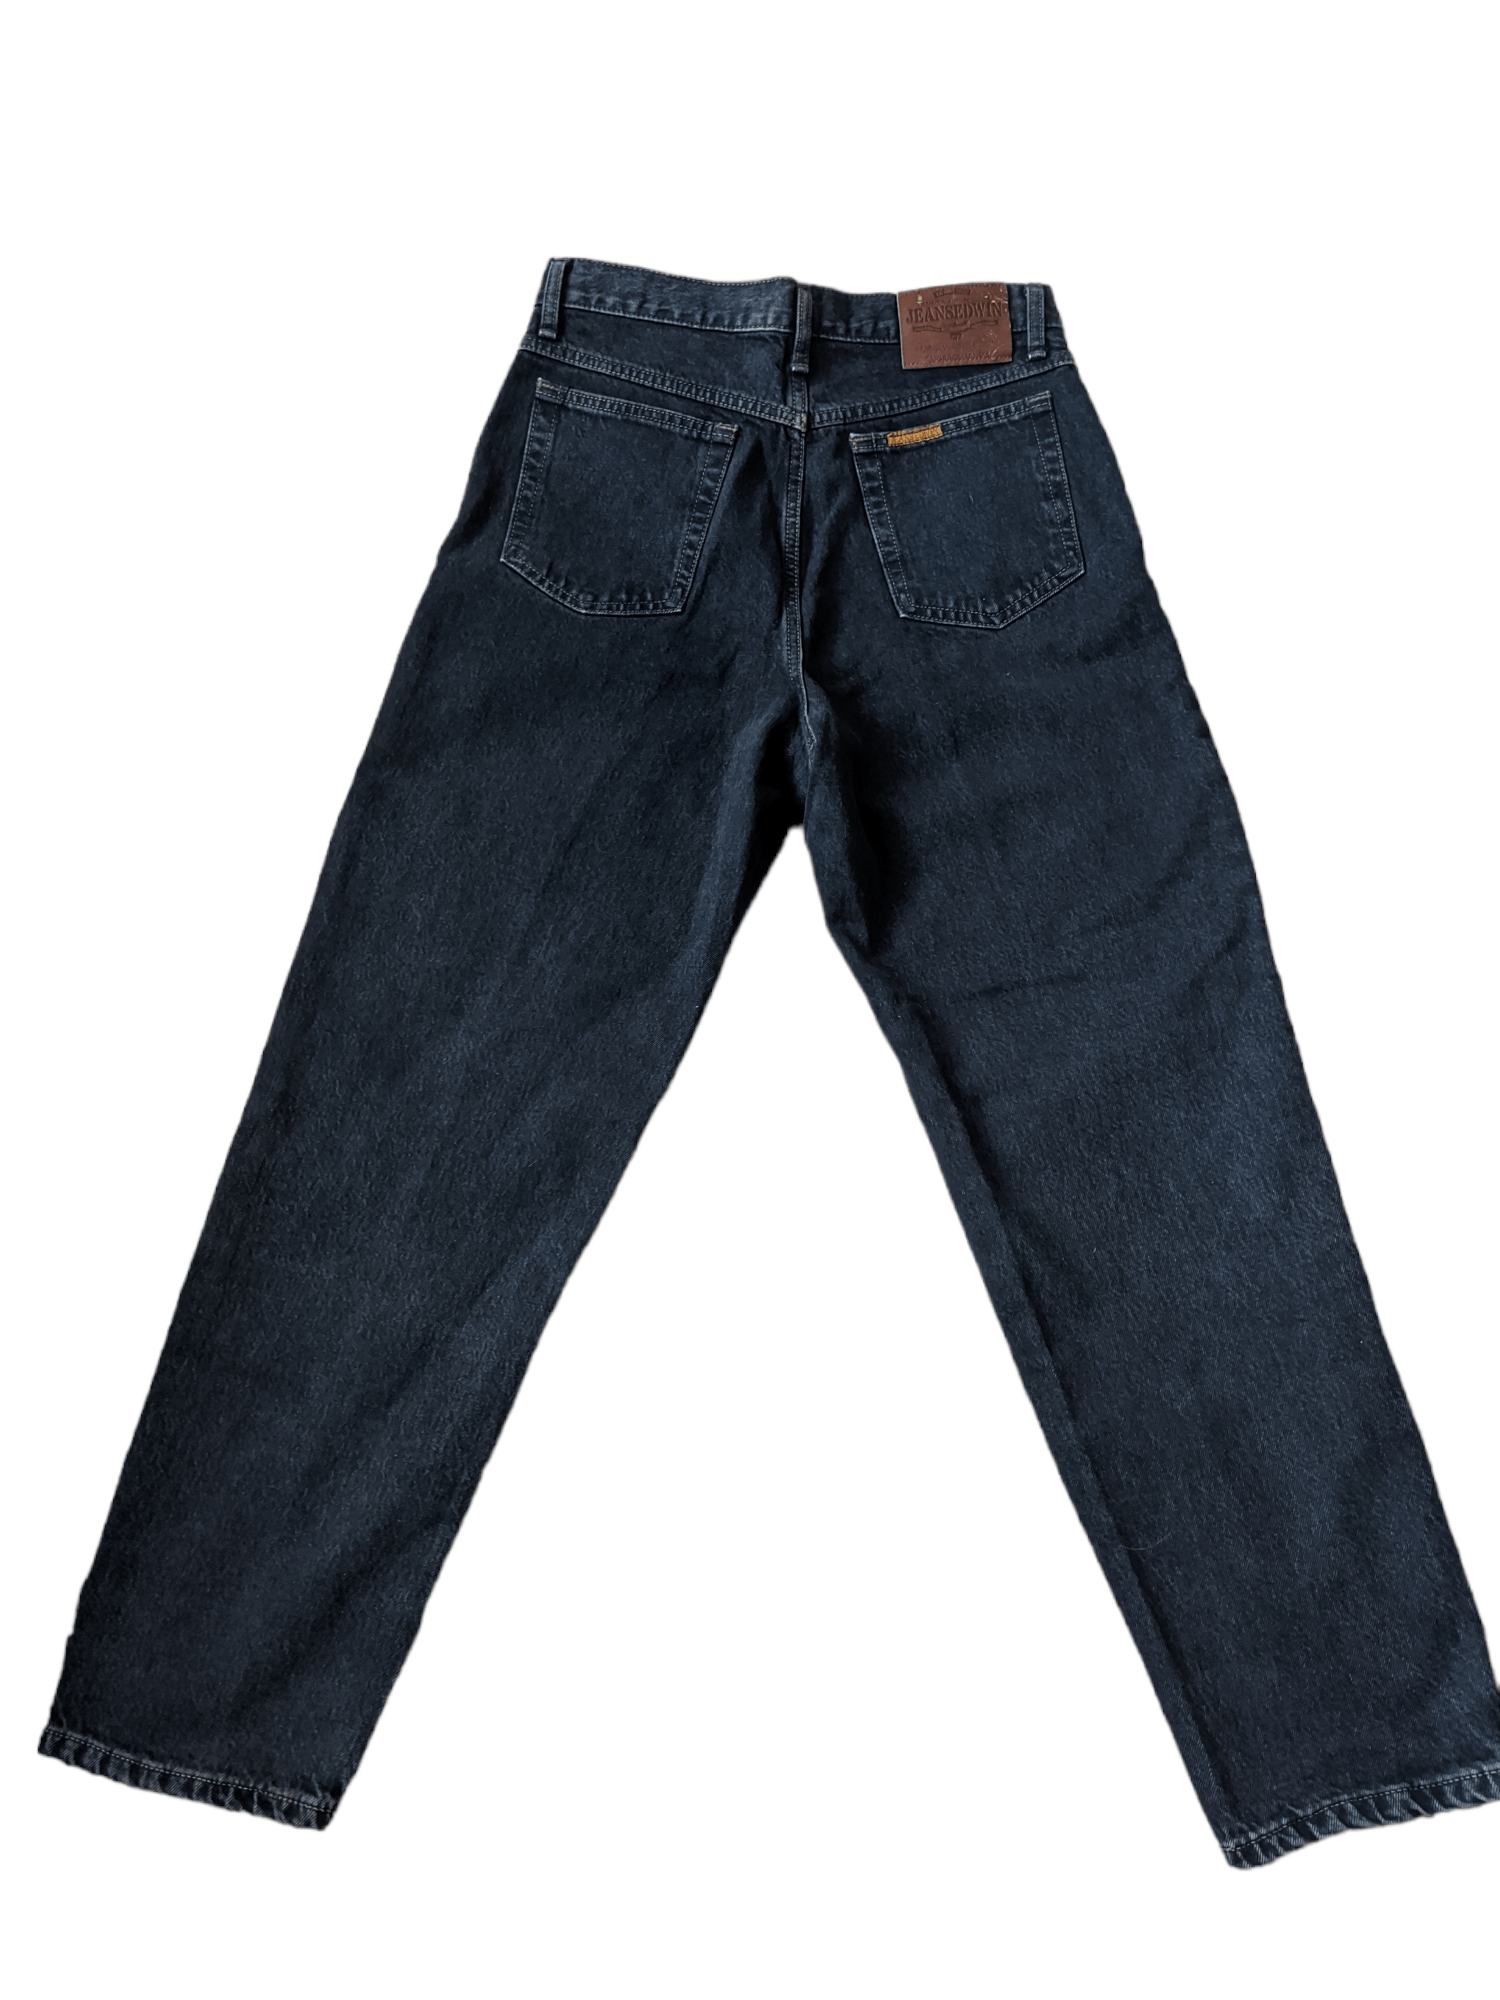 Edwin Edwin Newton Slim Jeans Made in Japan | Grailed